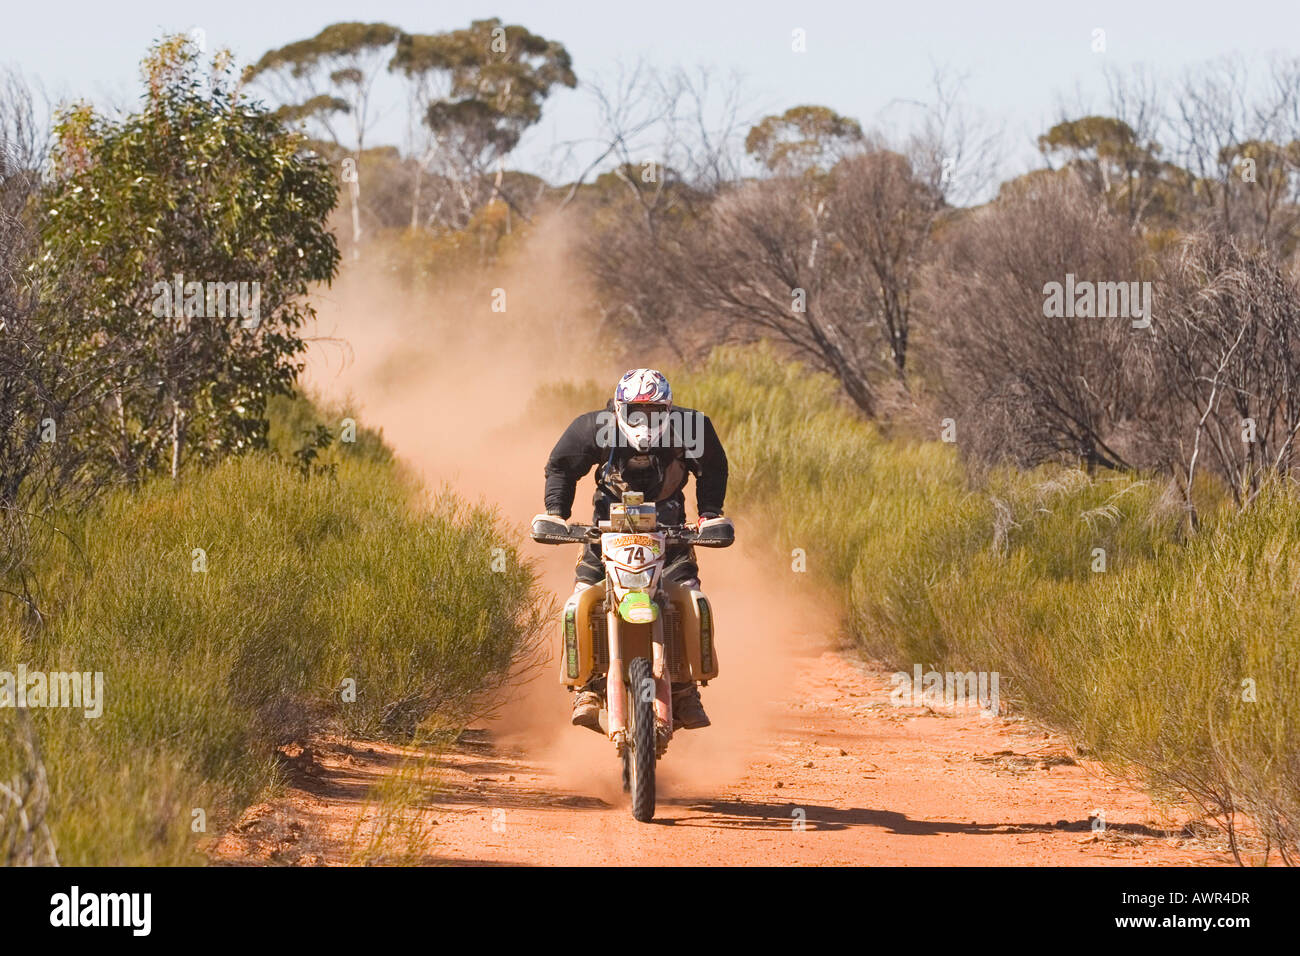 Australia Safari Rally 2007, Enduro motorcycle, outback, Western Australia, WA, Australia Stock Photo